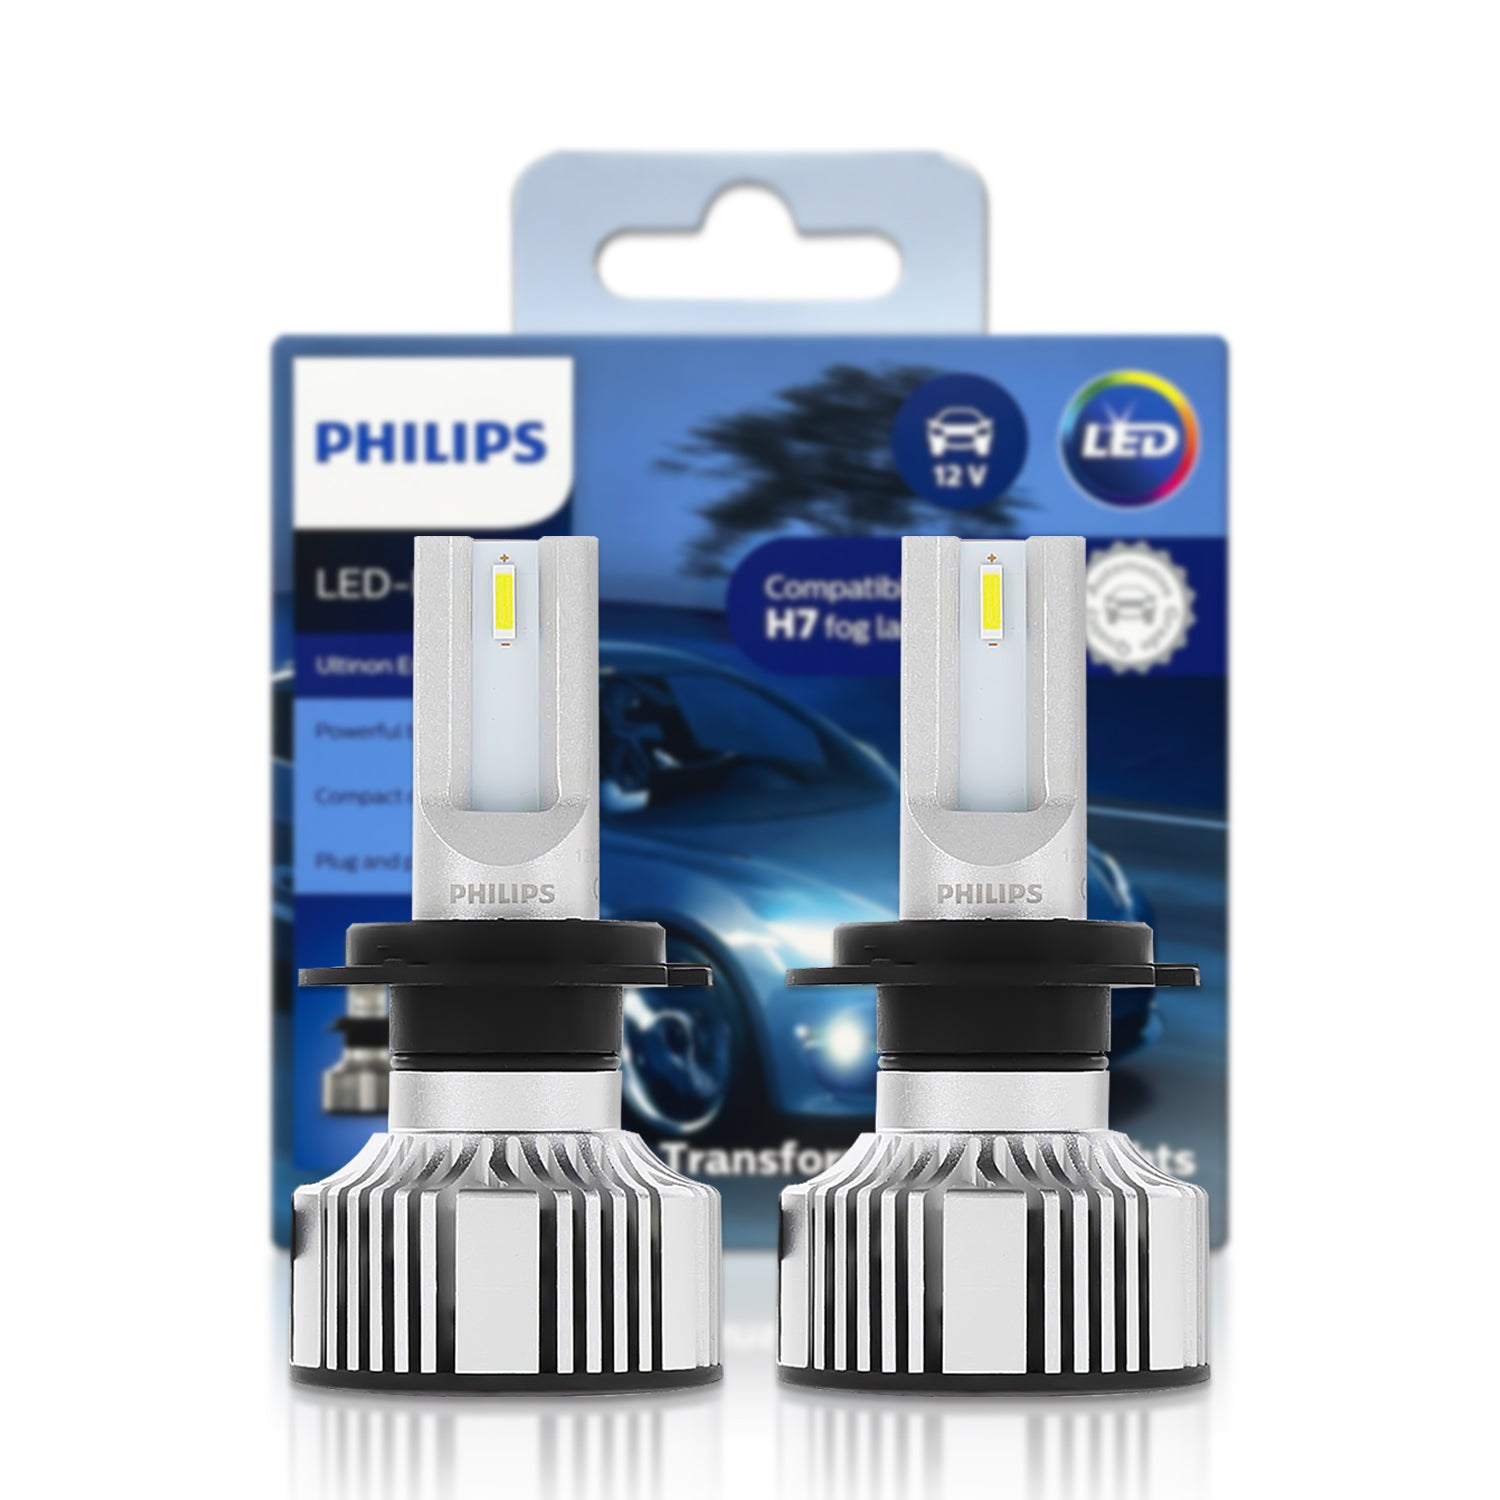 Philips – Phare De Voiture X-treme Ultinon Led H7 12v 6000k